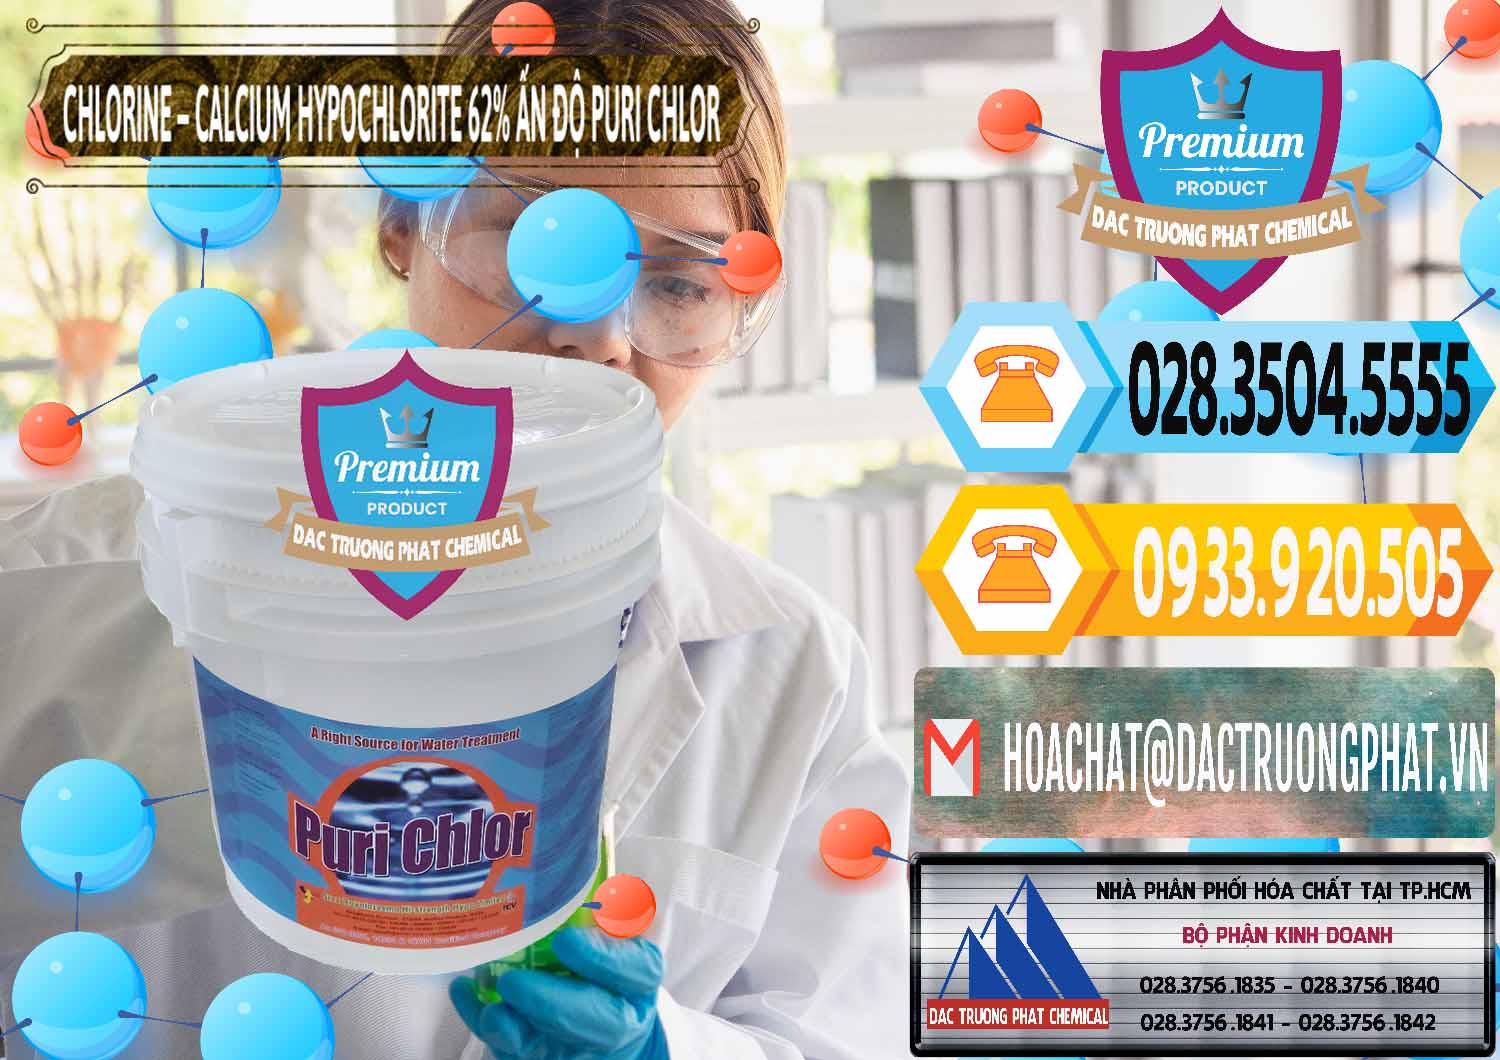 Đơn vị chuyên bán - cung cấp Chlorine – Clorin 62% Puri Chlo Ấn Độ India - 0052 - Công ty cung cấp & phân phối hóa chất tại TP.HCM - hoachattayrua.net